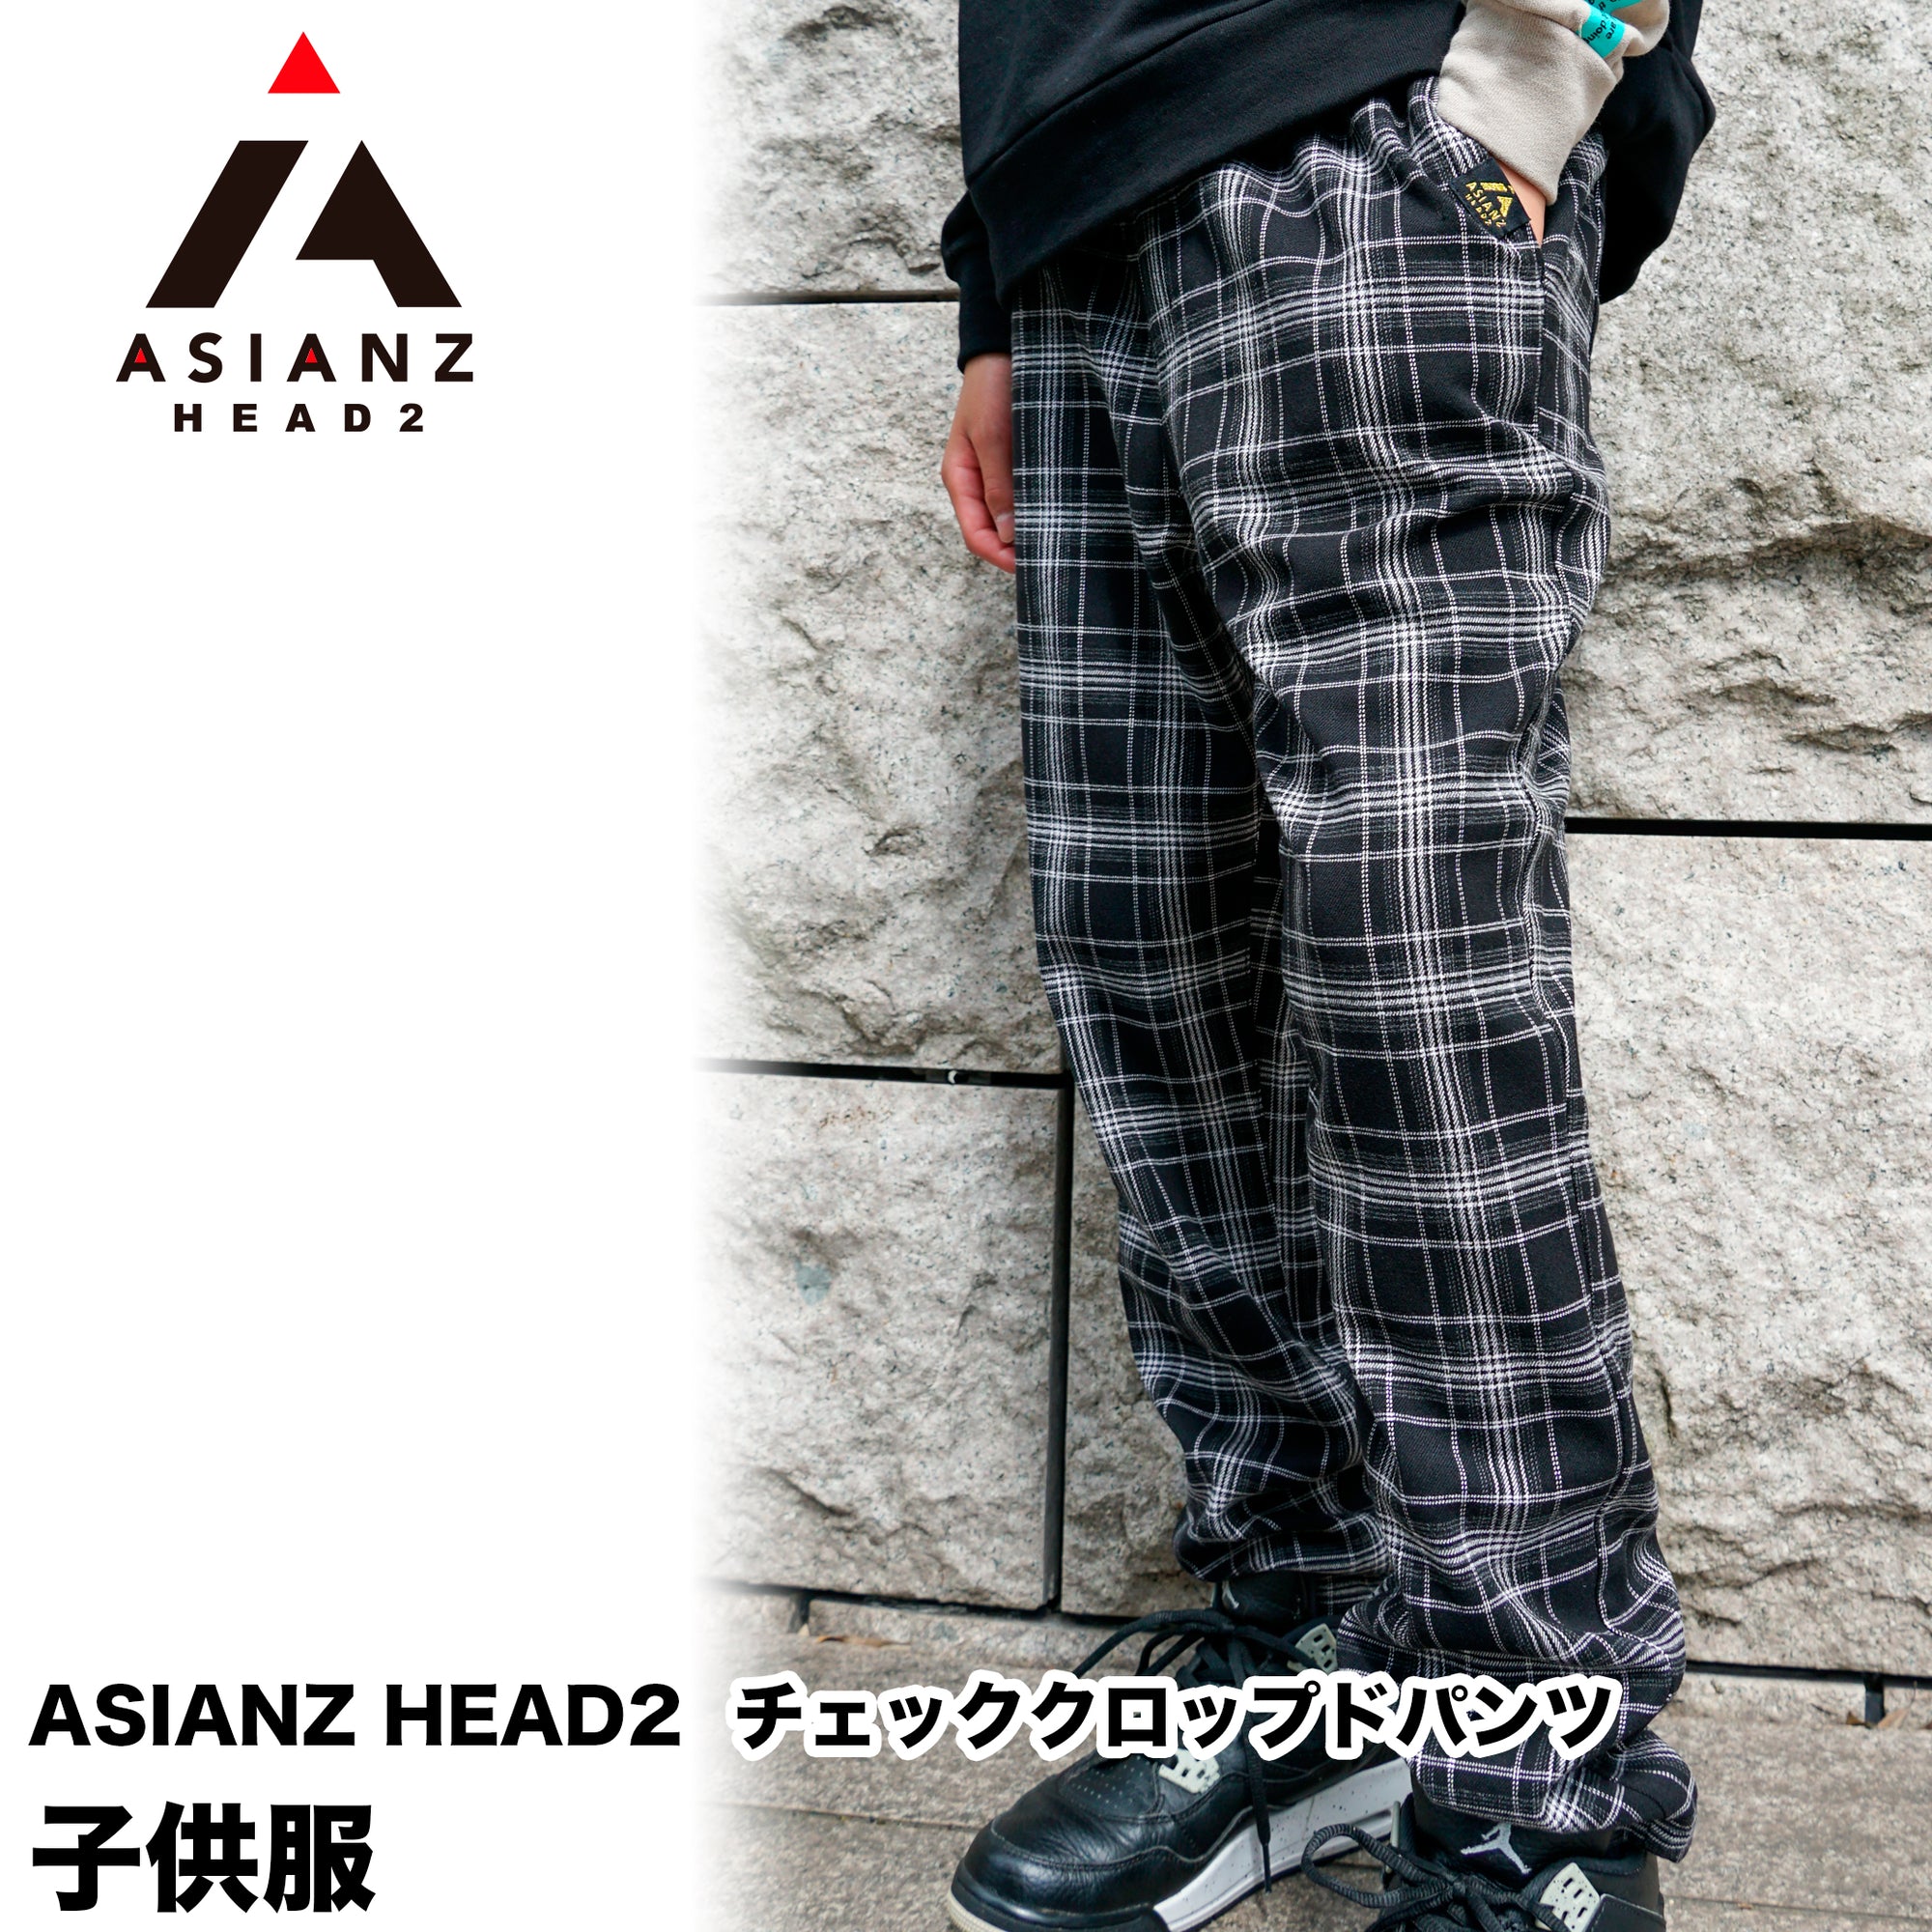 (40%オフ! セール商品)ASIANZ HEAD2 チェッククロップドパンツ キッズウェアー